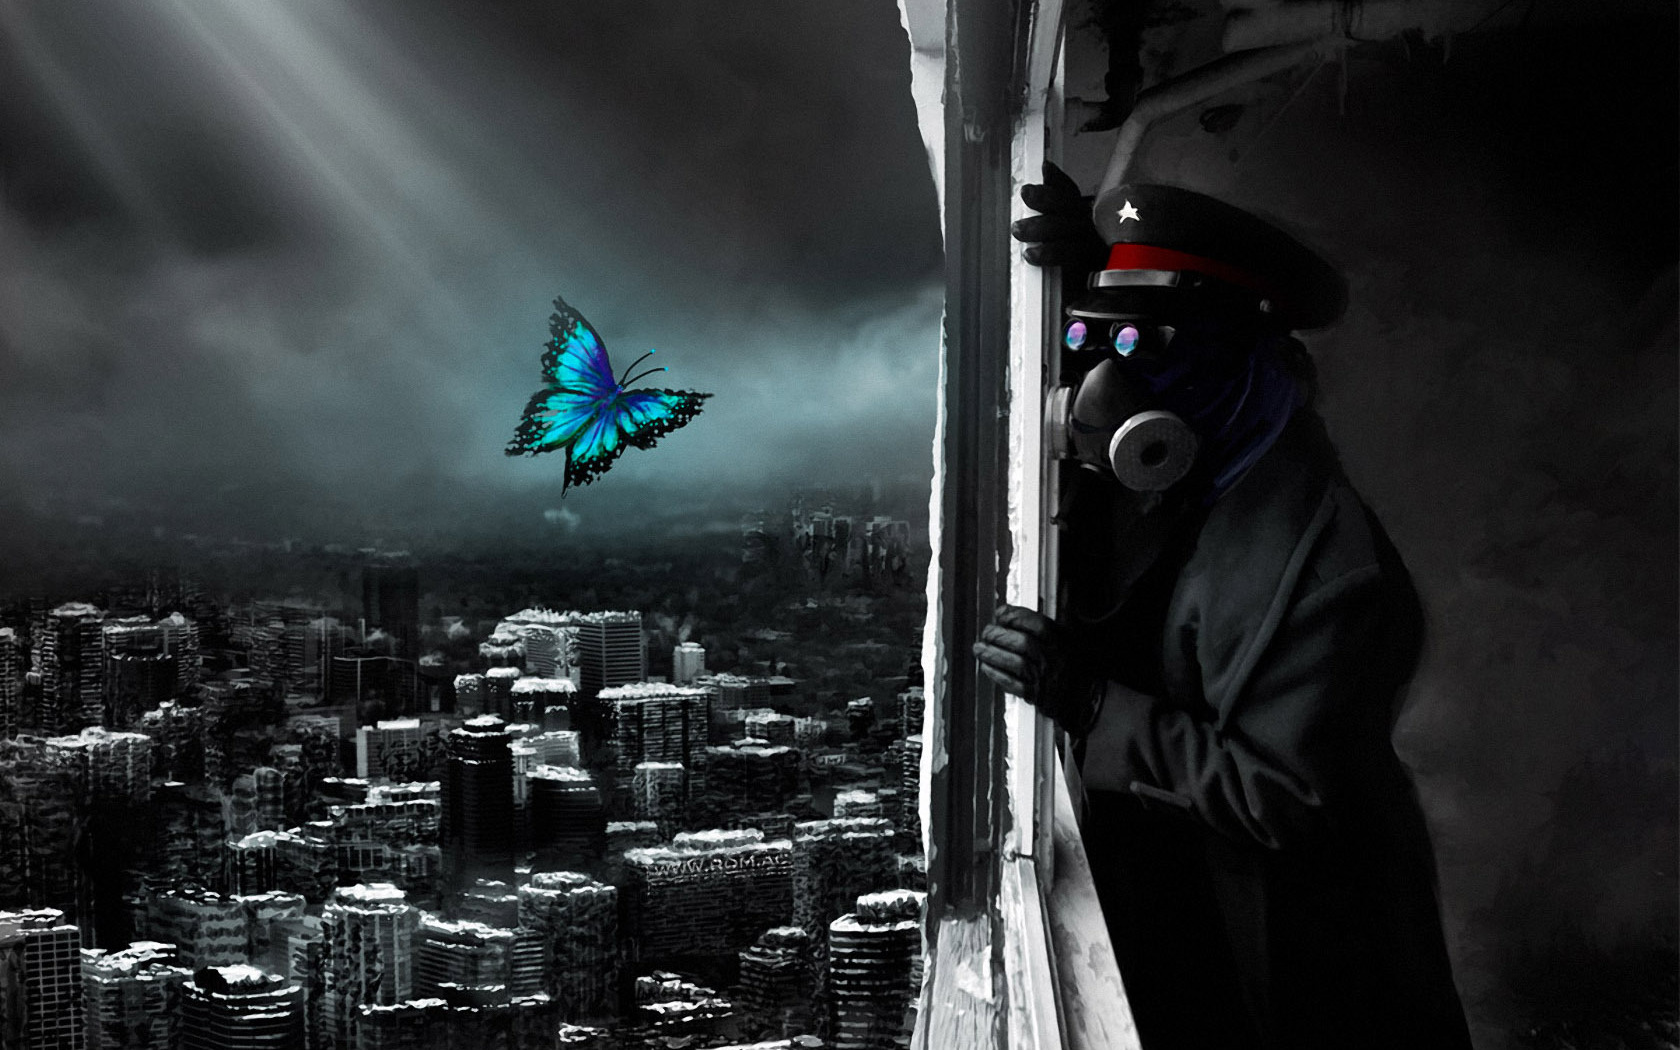 3d обои Romantically apocalyptic.  Мужчина в противогазе и в фуражке со звёздочкой смотрит вниз, на разрушенный город, а на фоне мрачного, серого неба порхает ярко раскрашенная бабочка (21декабря 2012 года.)  бабочки # 20803